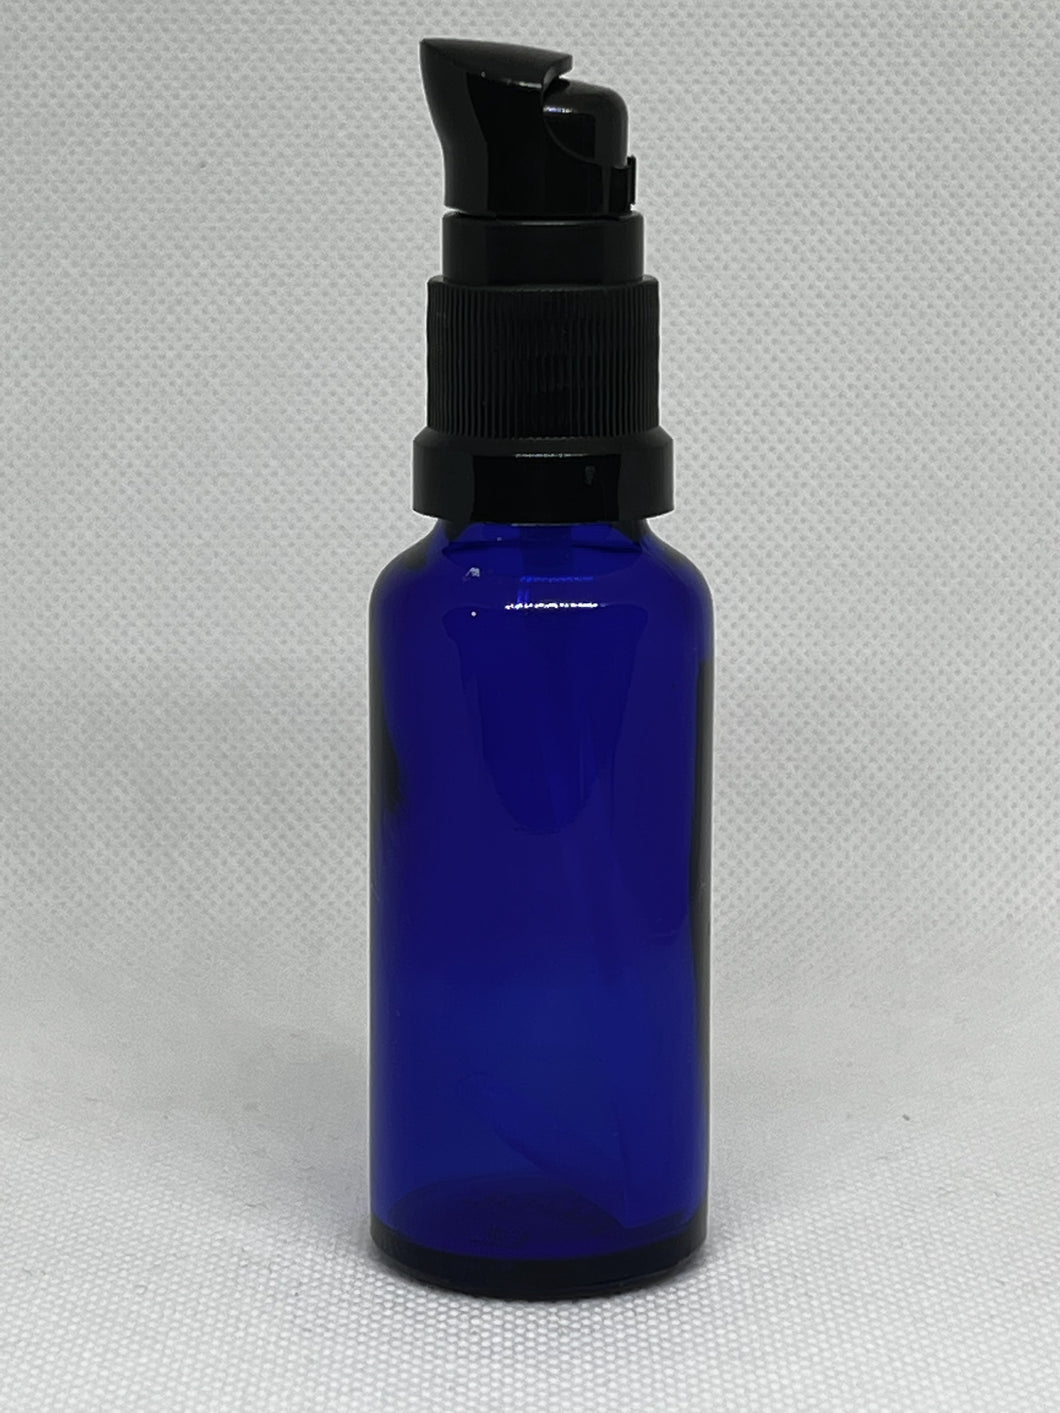 30ml Blue Bottle for Facial Oil